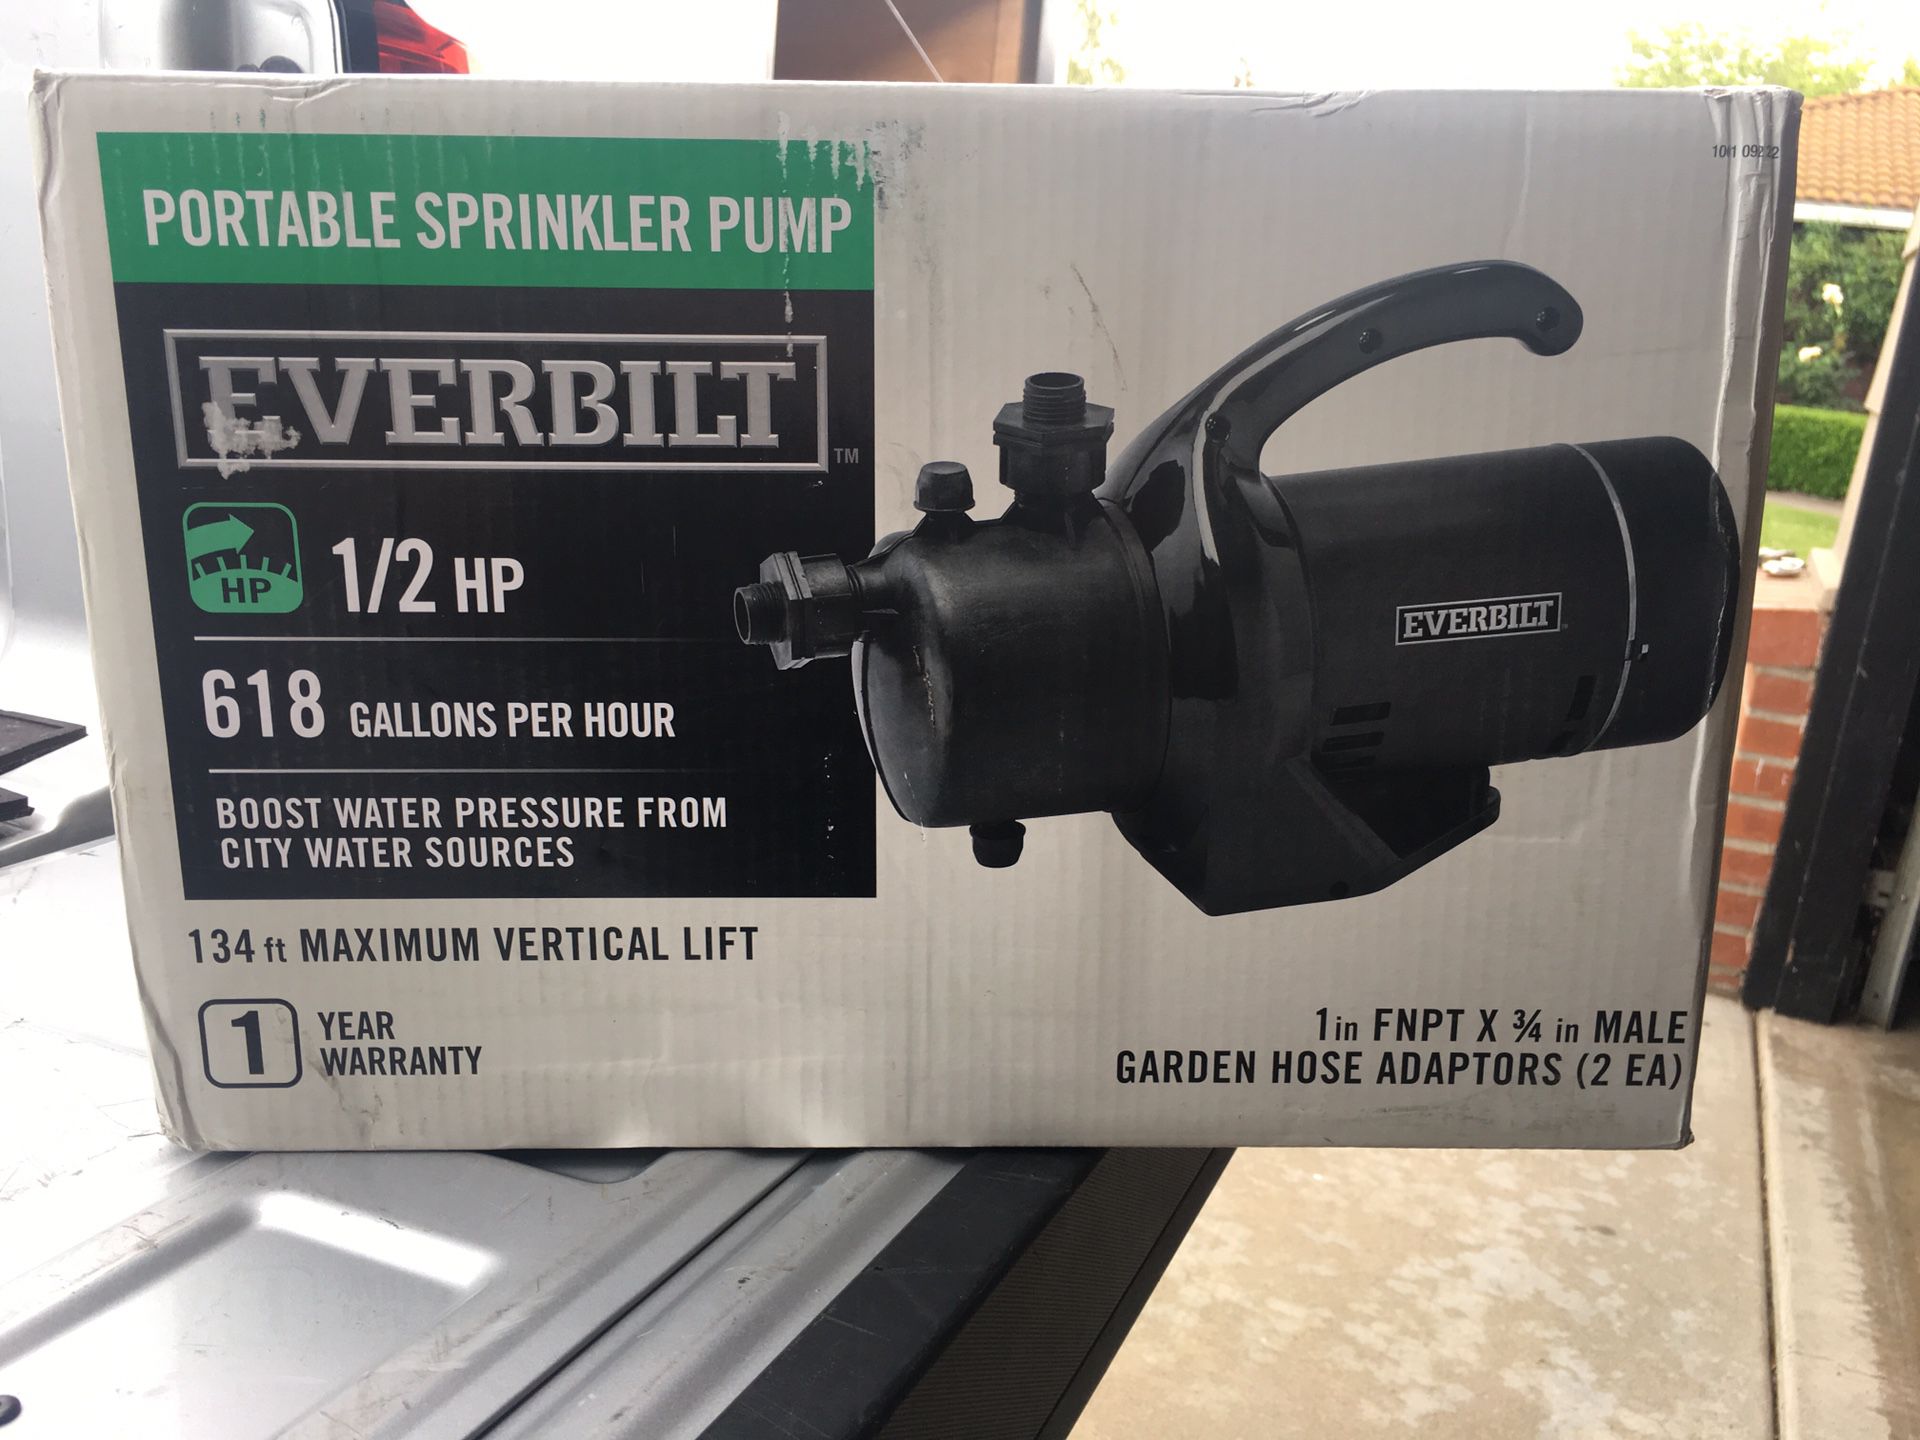 Everbilt portable sprinkler pump